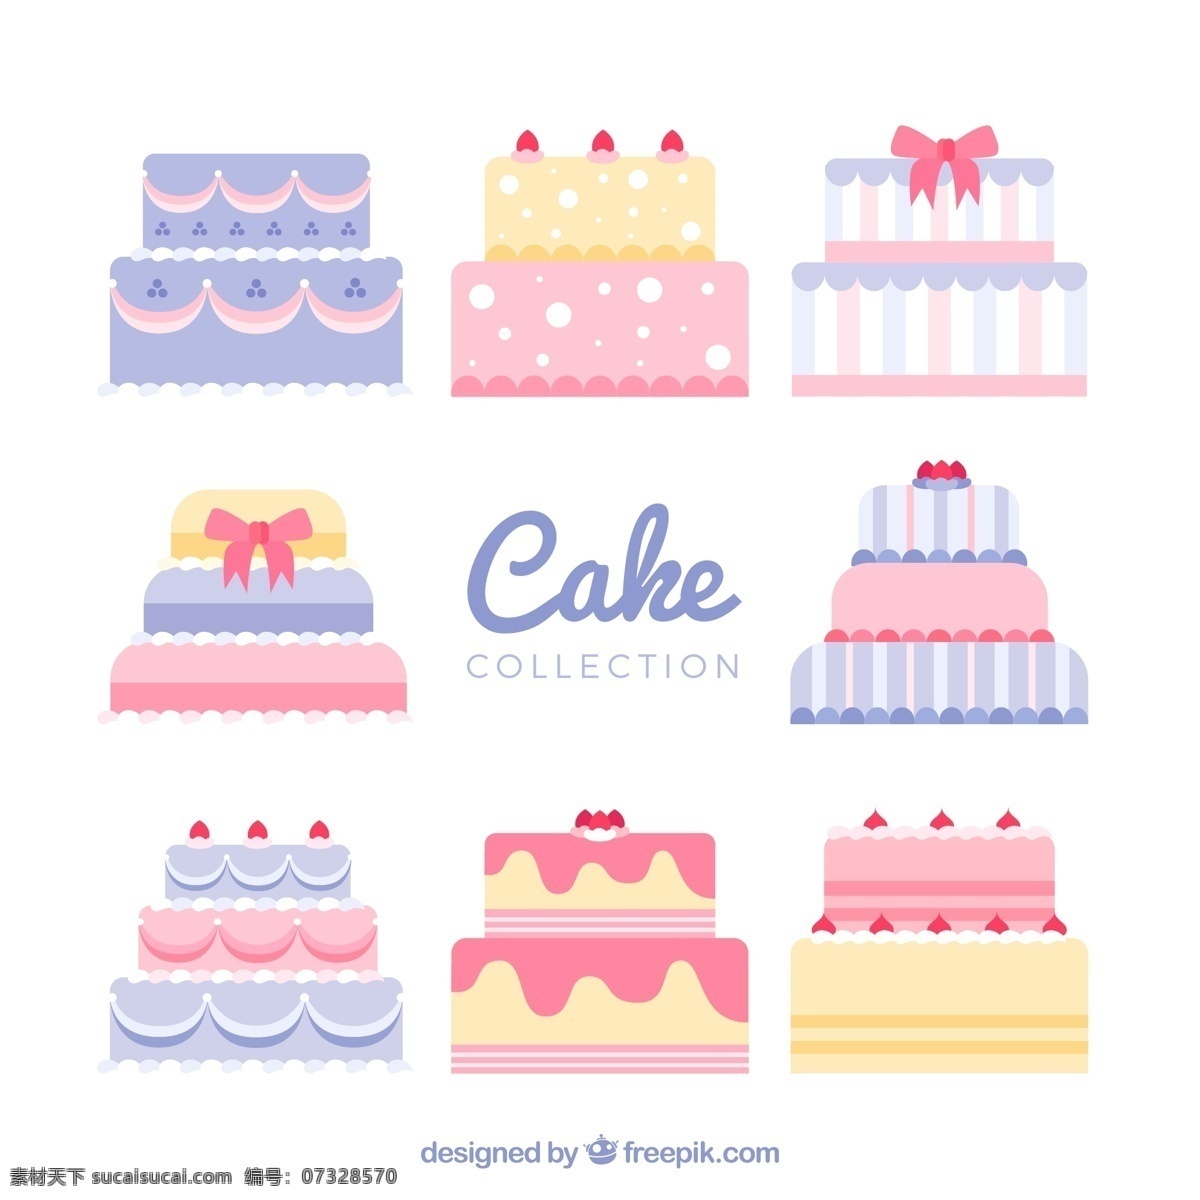 彩色清新蛋糕 卡通甜品 卡通 清新 生日蛋糕 节日蛋糕 矢量图 生活百科 餐饮美食